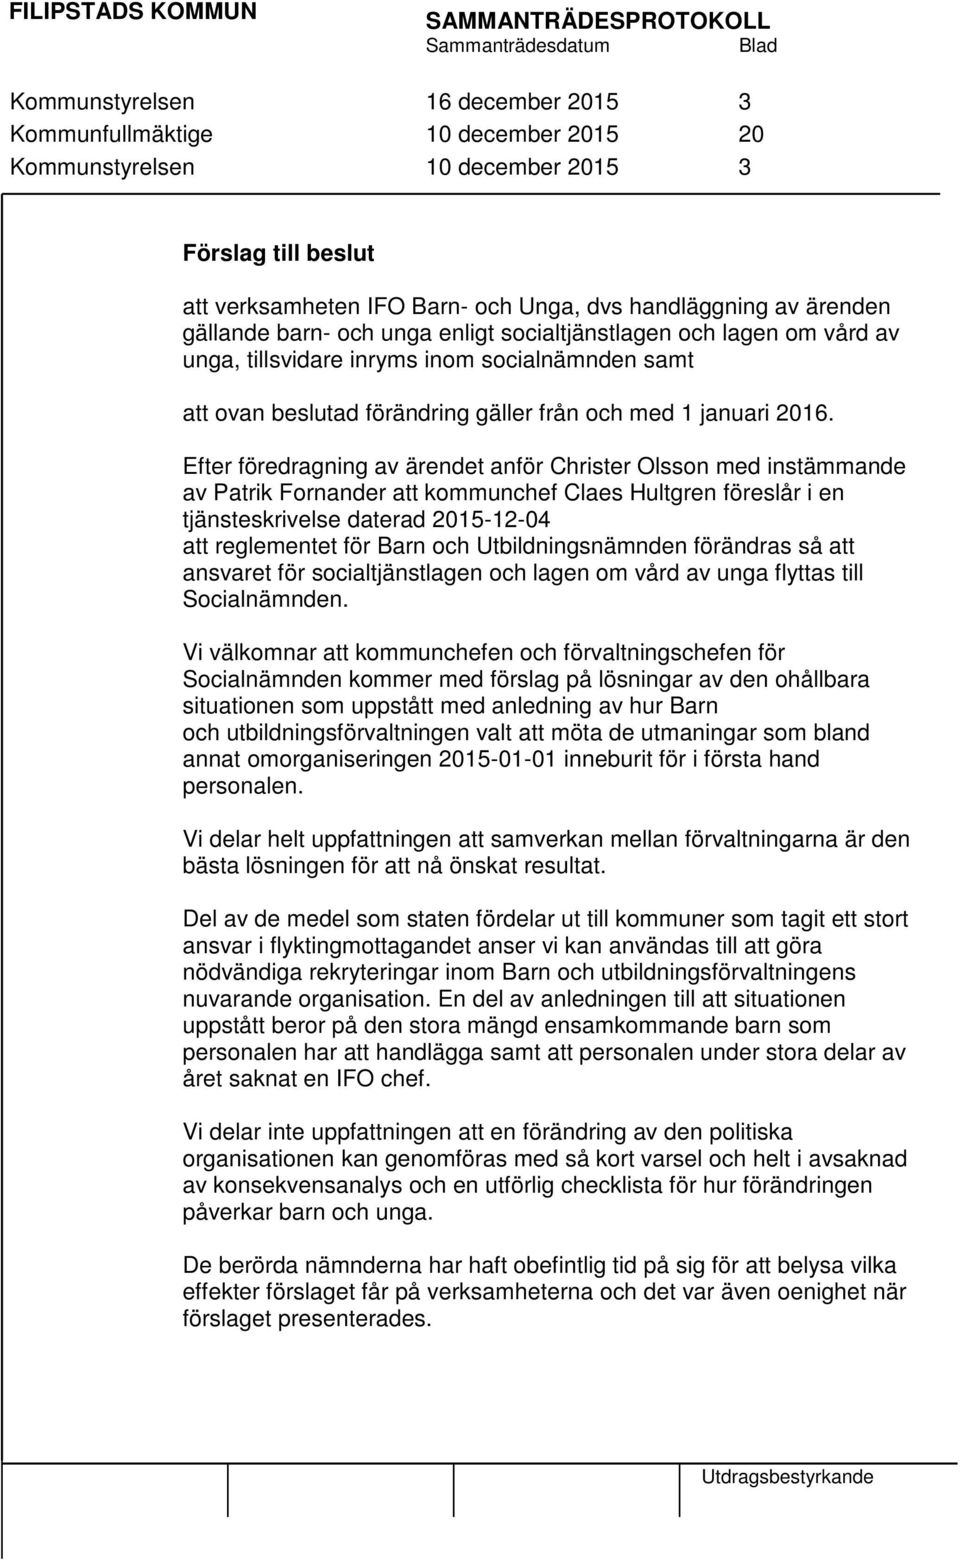 Efter föredragning av ärendet anför Christer Olsson med instämmande av Patrik Fornander att kommunchef Claes Hultgren föreslår i en tjänsteskrivelse daterad 2015-12-04 att reglementet för Barn och